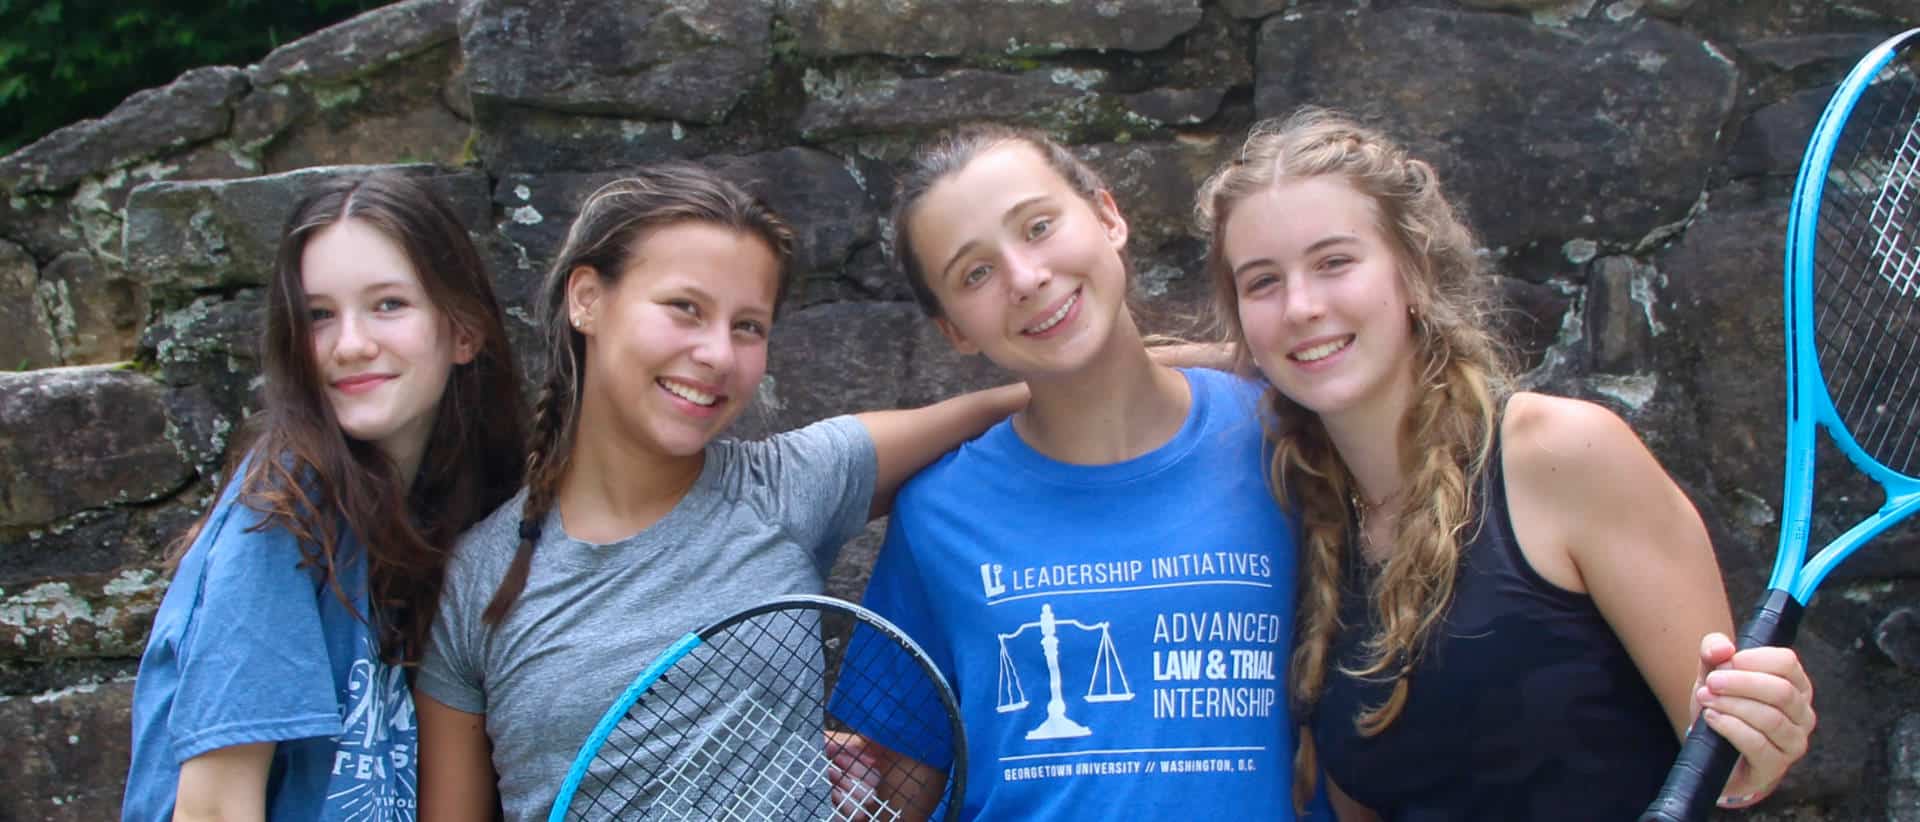 camp teen girls tennis